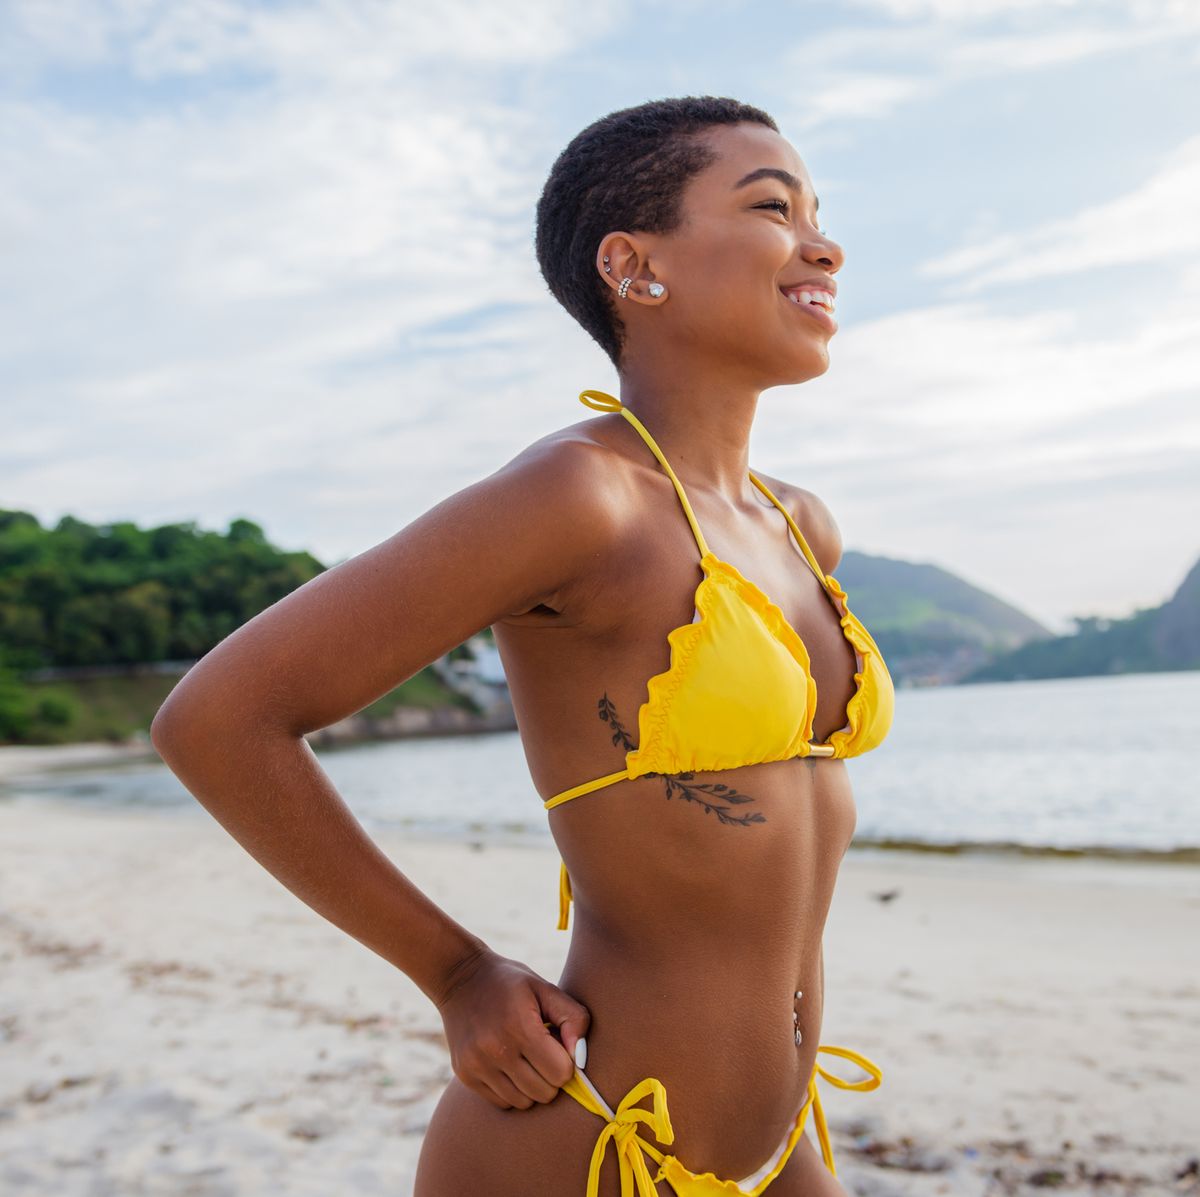 Schotel Omgaan met verhouding De leukste bikini's voor deze zomer: dit zijn onze 10 favorieten